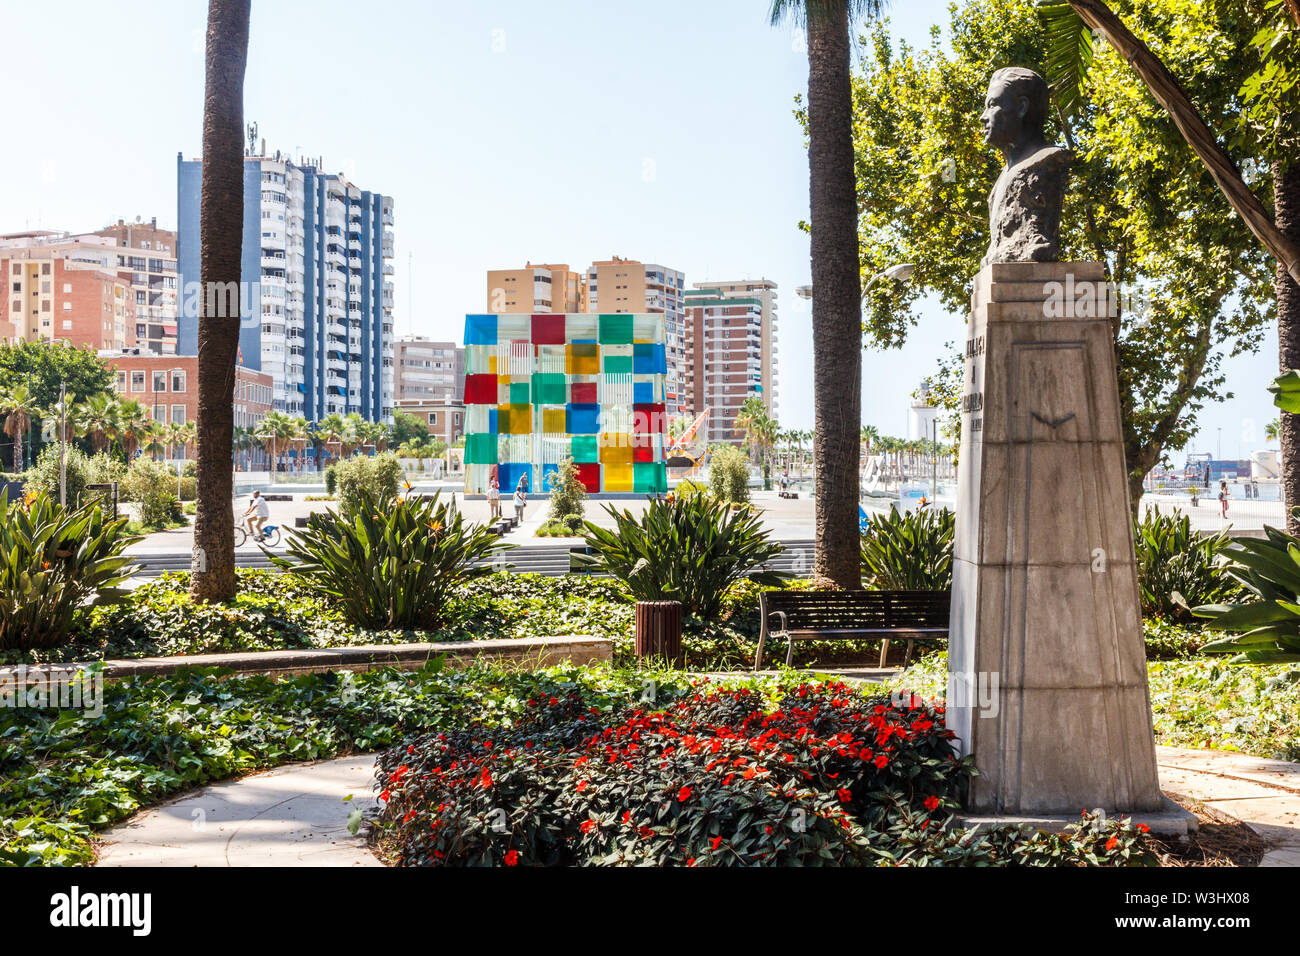 Malaga, Espagne - 26 août 2015 : Statue de Ruben Dario dans Malaga Park, le Centre culturel Pompidou est dans l'arrière-plan. Banque D'Images